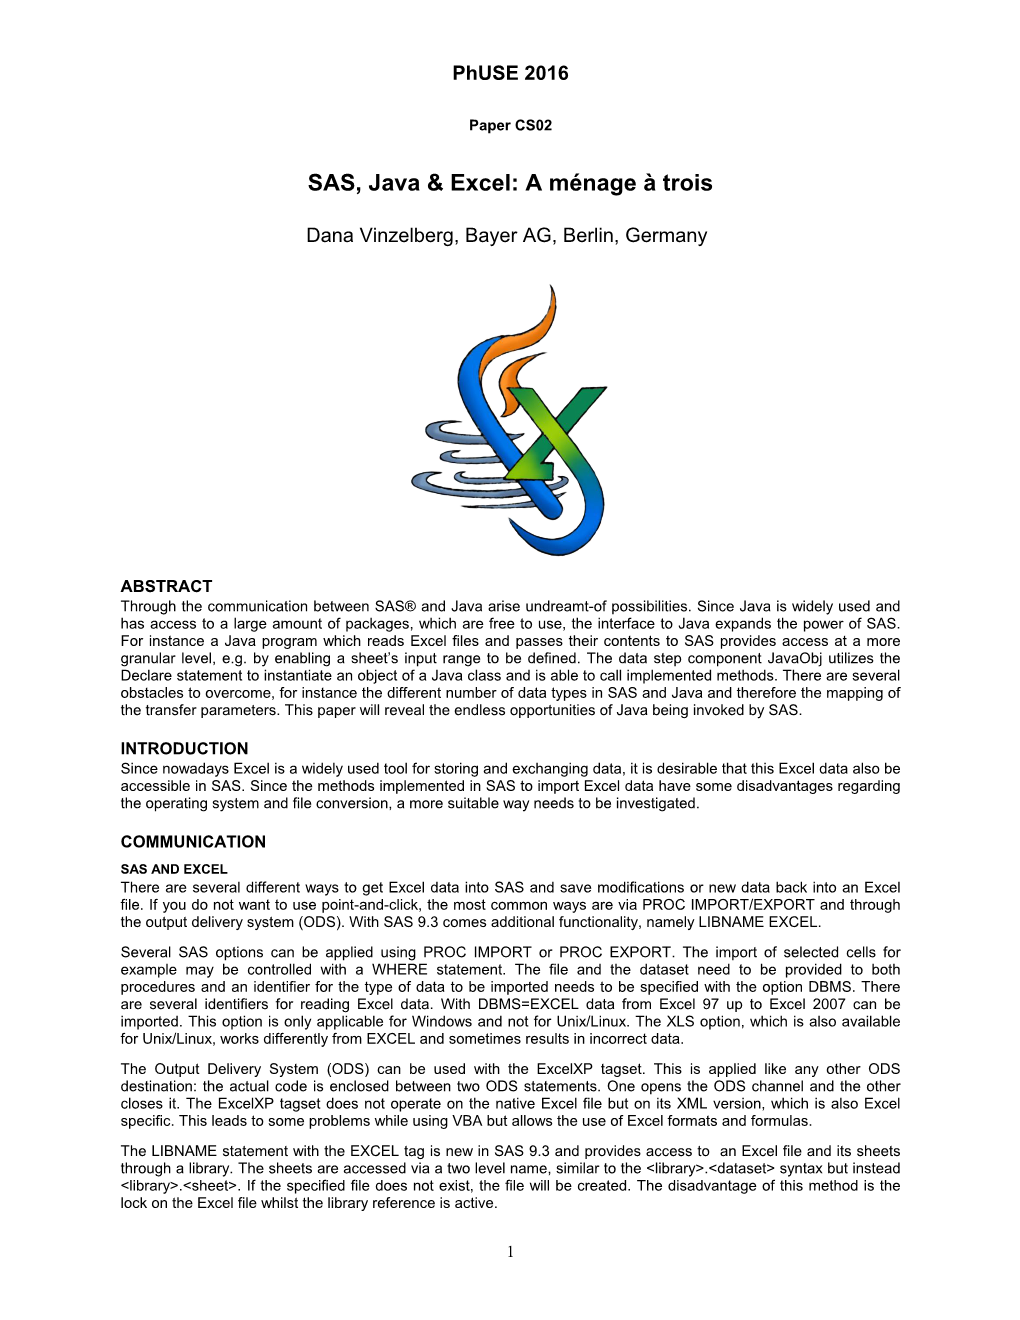 SAS, Java & Excel